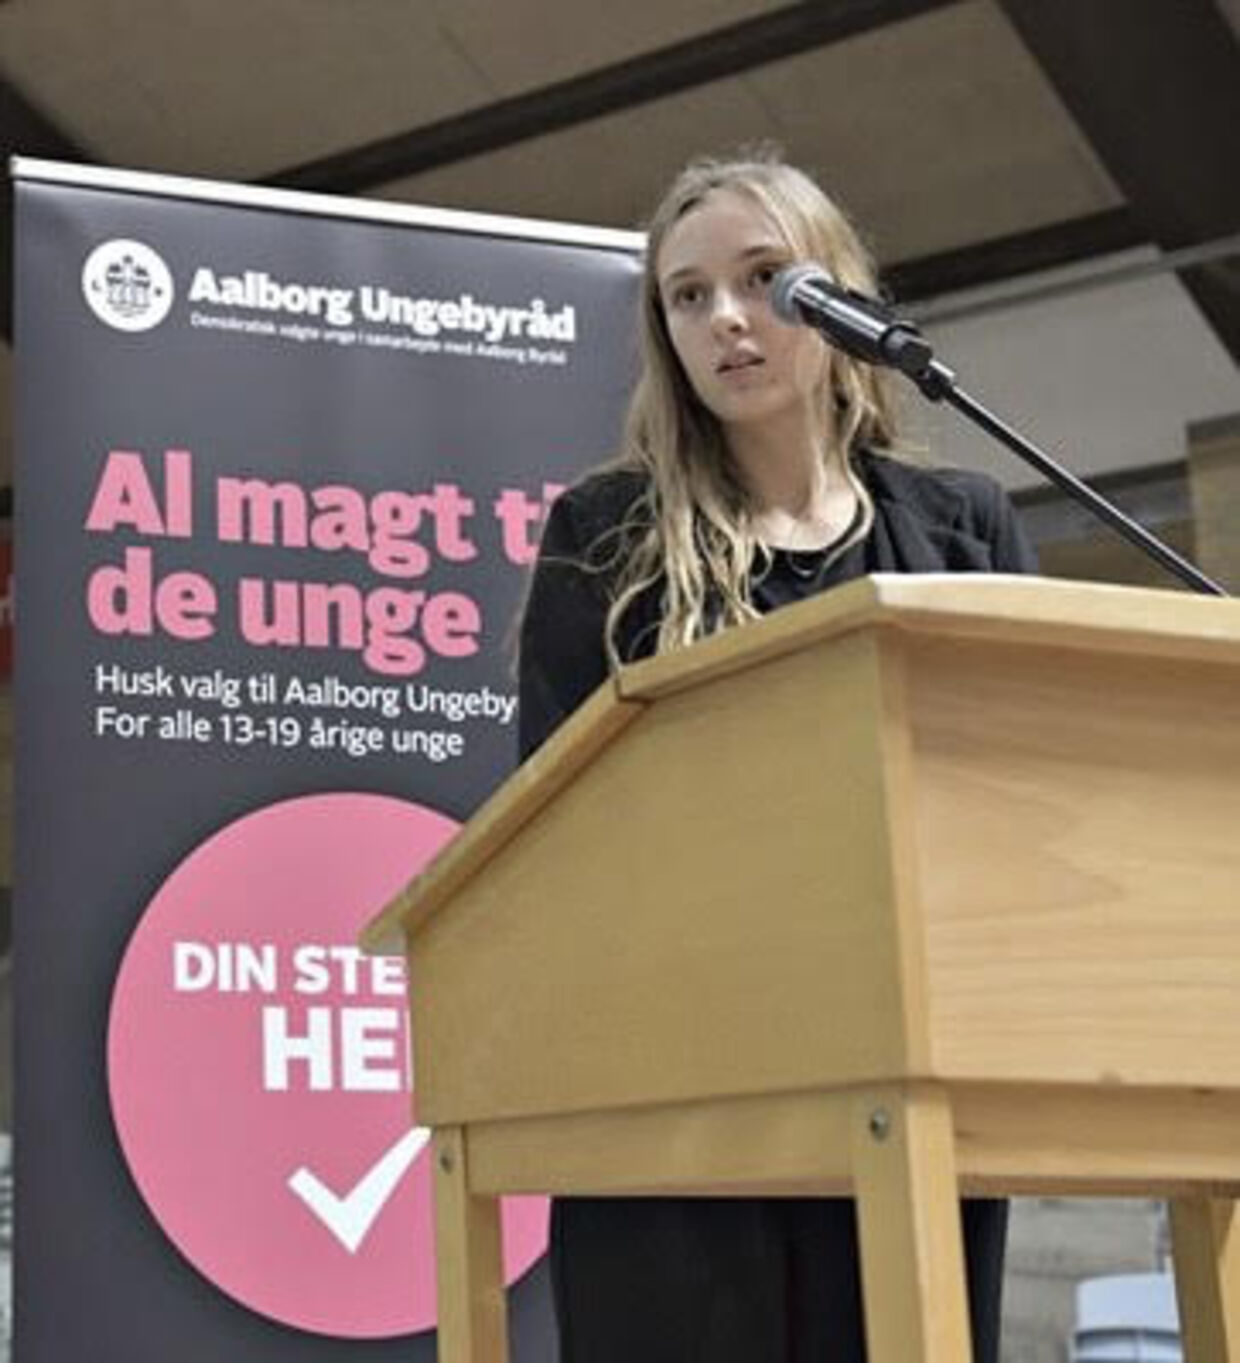 Nikoline Linnemann Prehns politiske karriere havde blandt andet sin spæde start i Aalborg Ungebyråd, hvor hun var formand. Foto: Privat